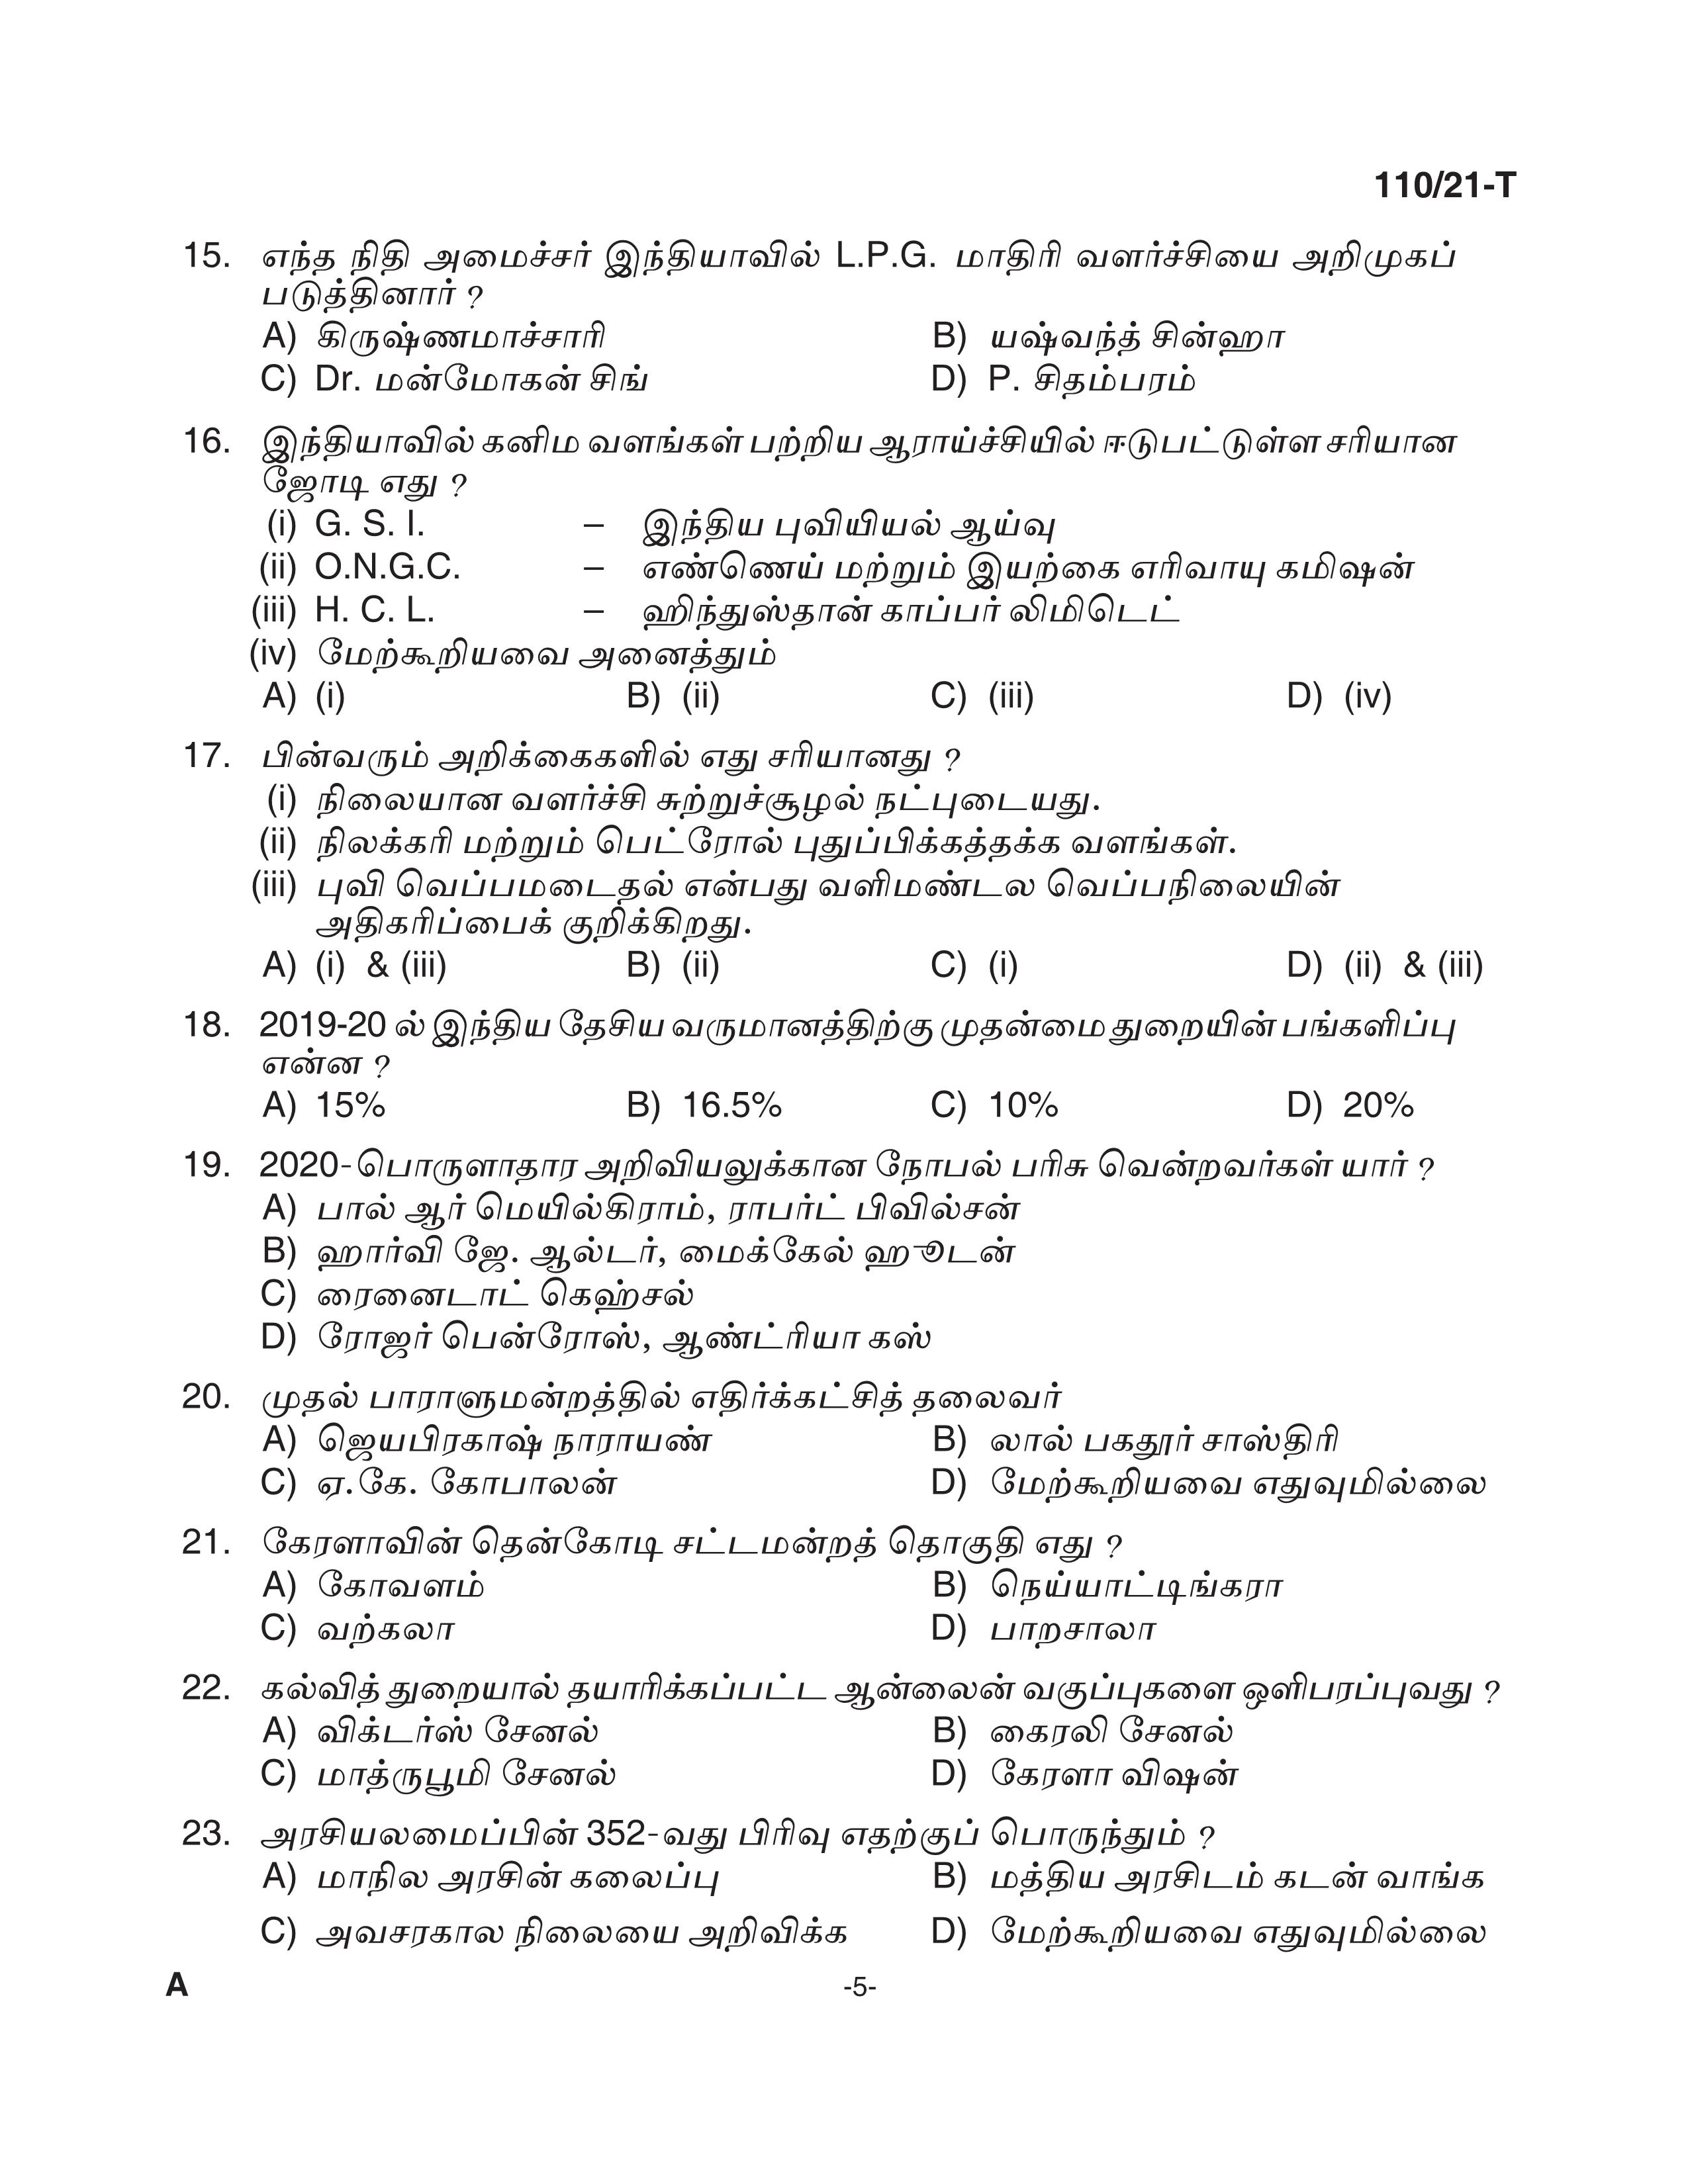 KPSC Assistant Grade II Sergeant Tamil Exam 2021 Code 1102021 T 4